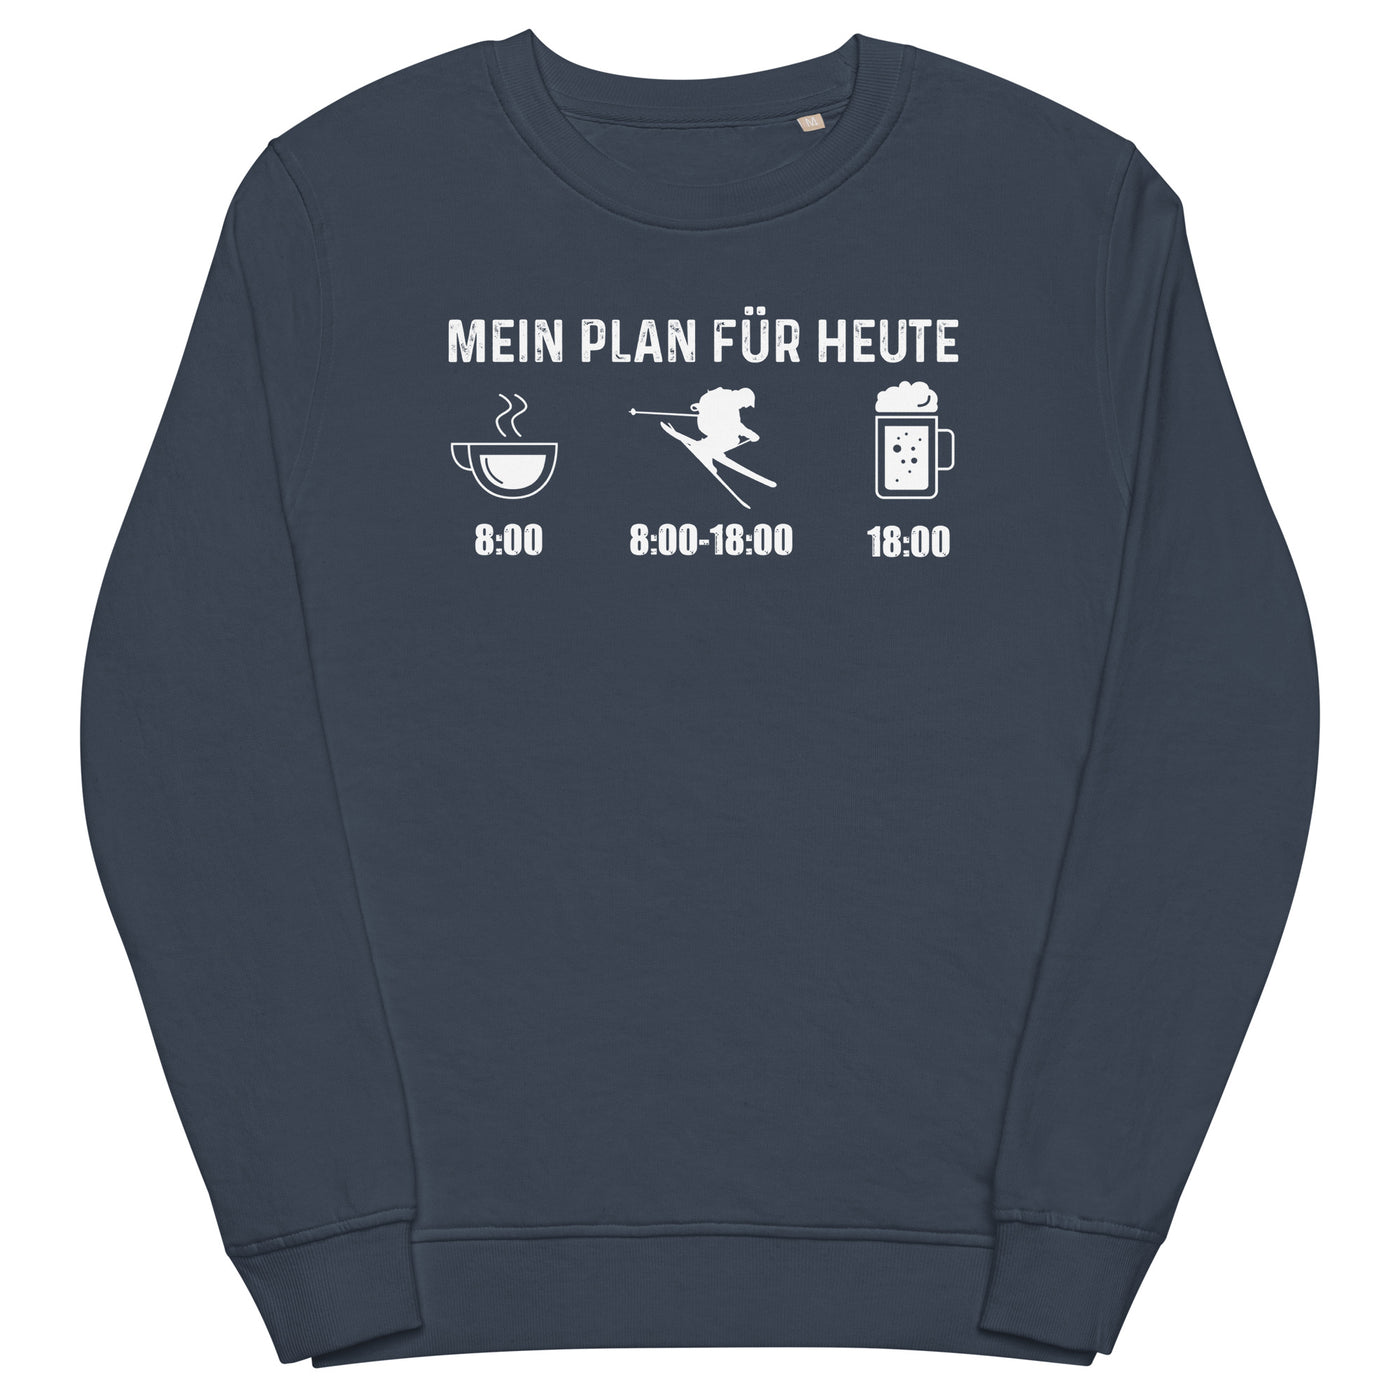 Mein Plan Für Heute - Unisex Premium Organic Sweatshirt klettern ski xxx yyy zzz French Navy